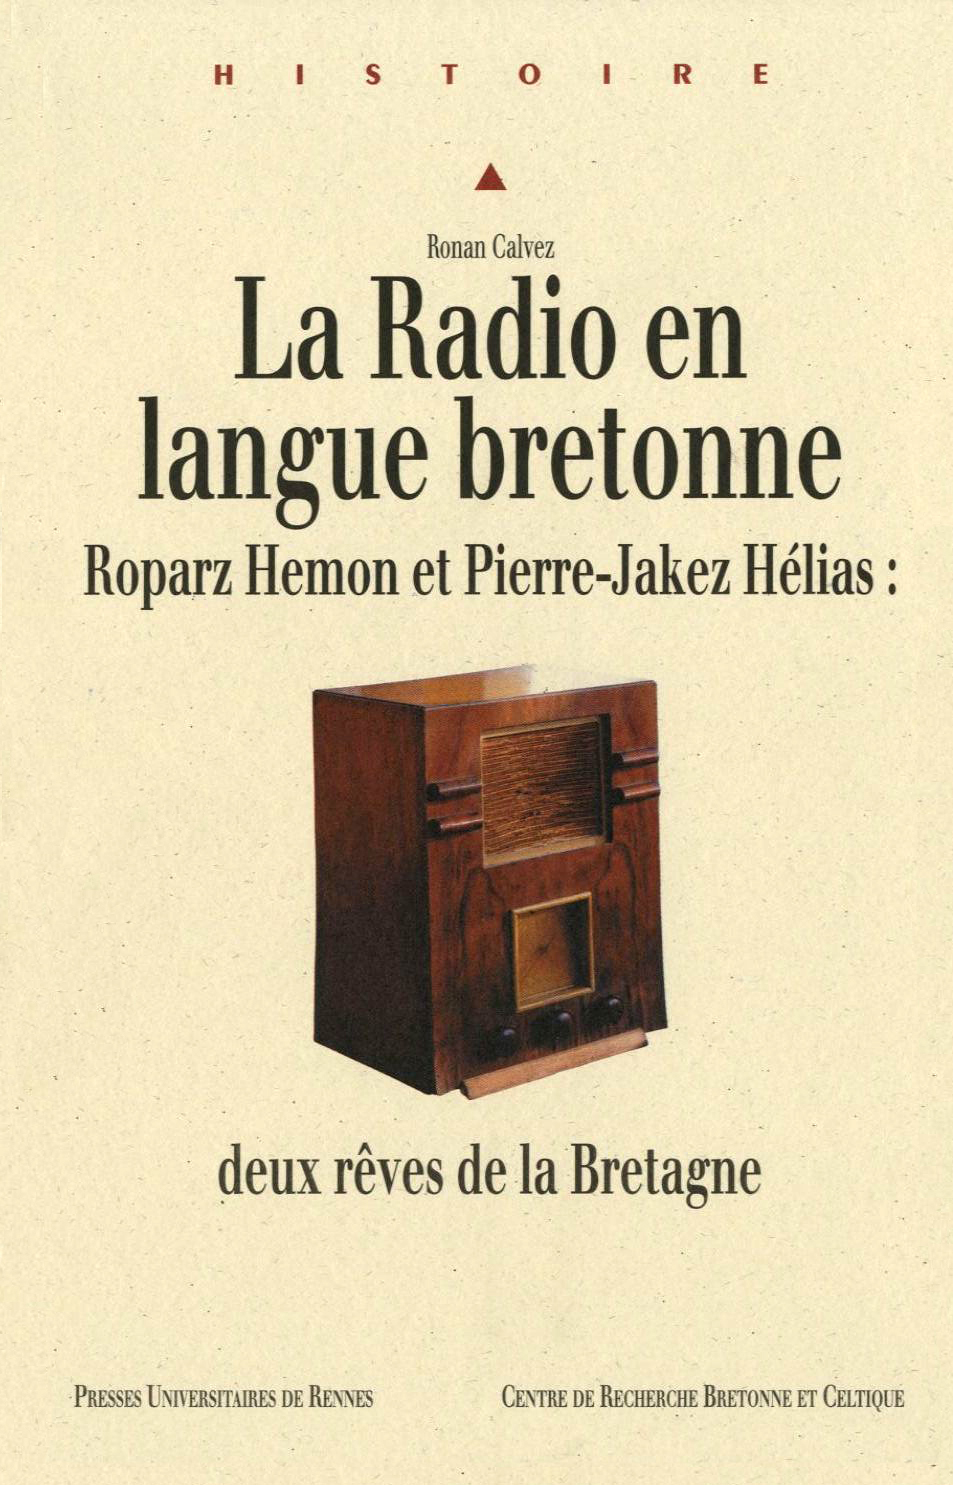 La Radio en langue bretonne